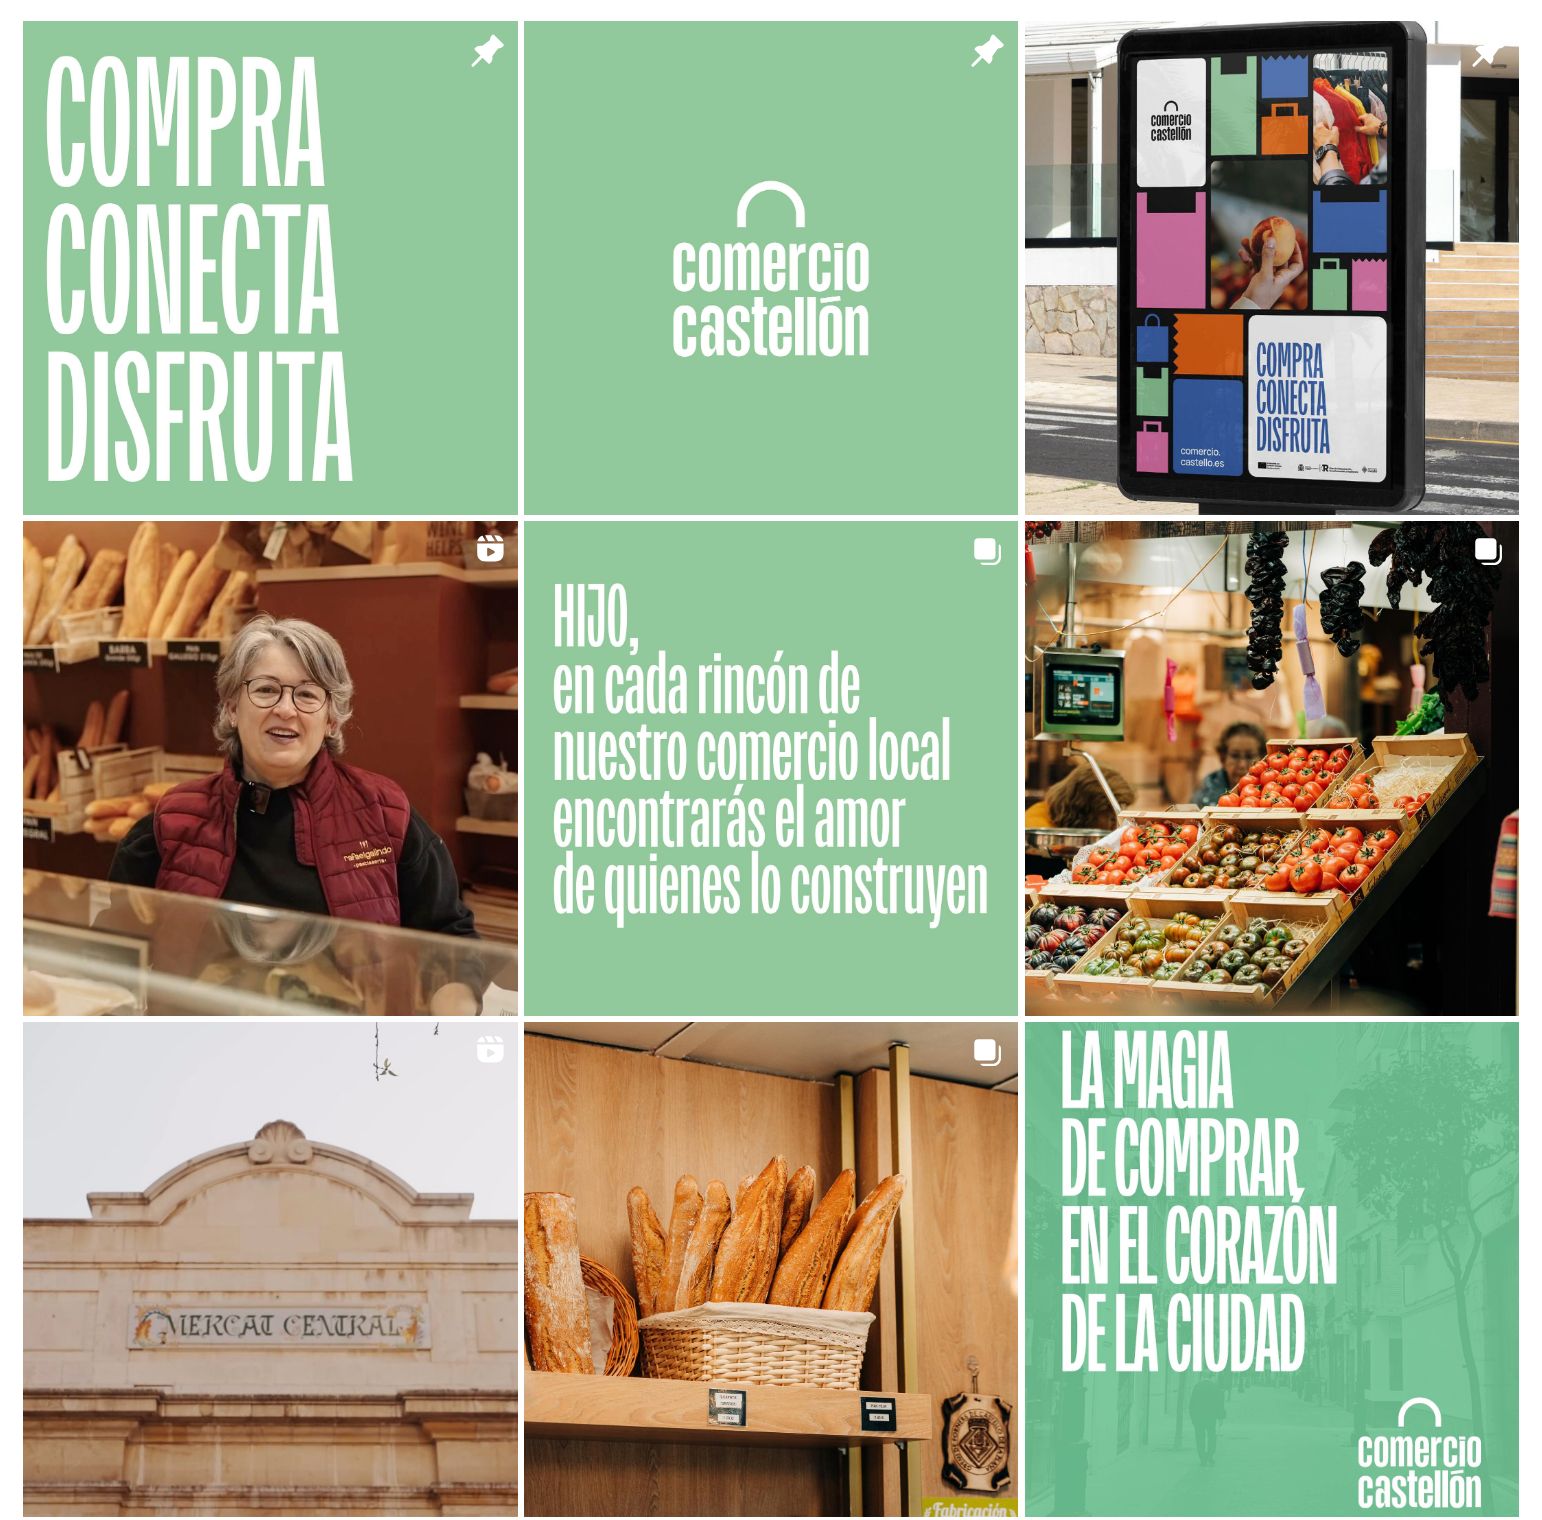 La concejalía de Comercio y Consumo activa sus redes sociales con el objetivo de promocionar el comercio local